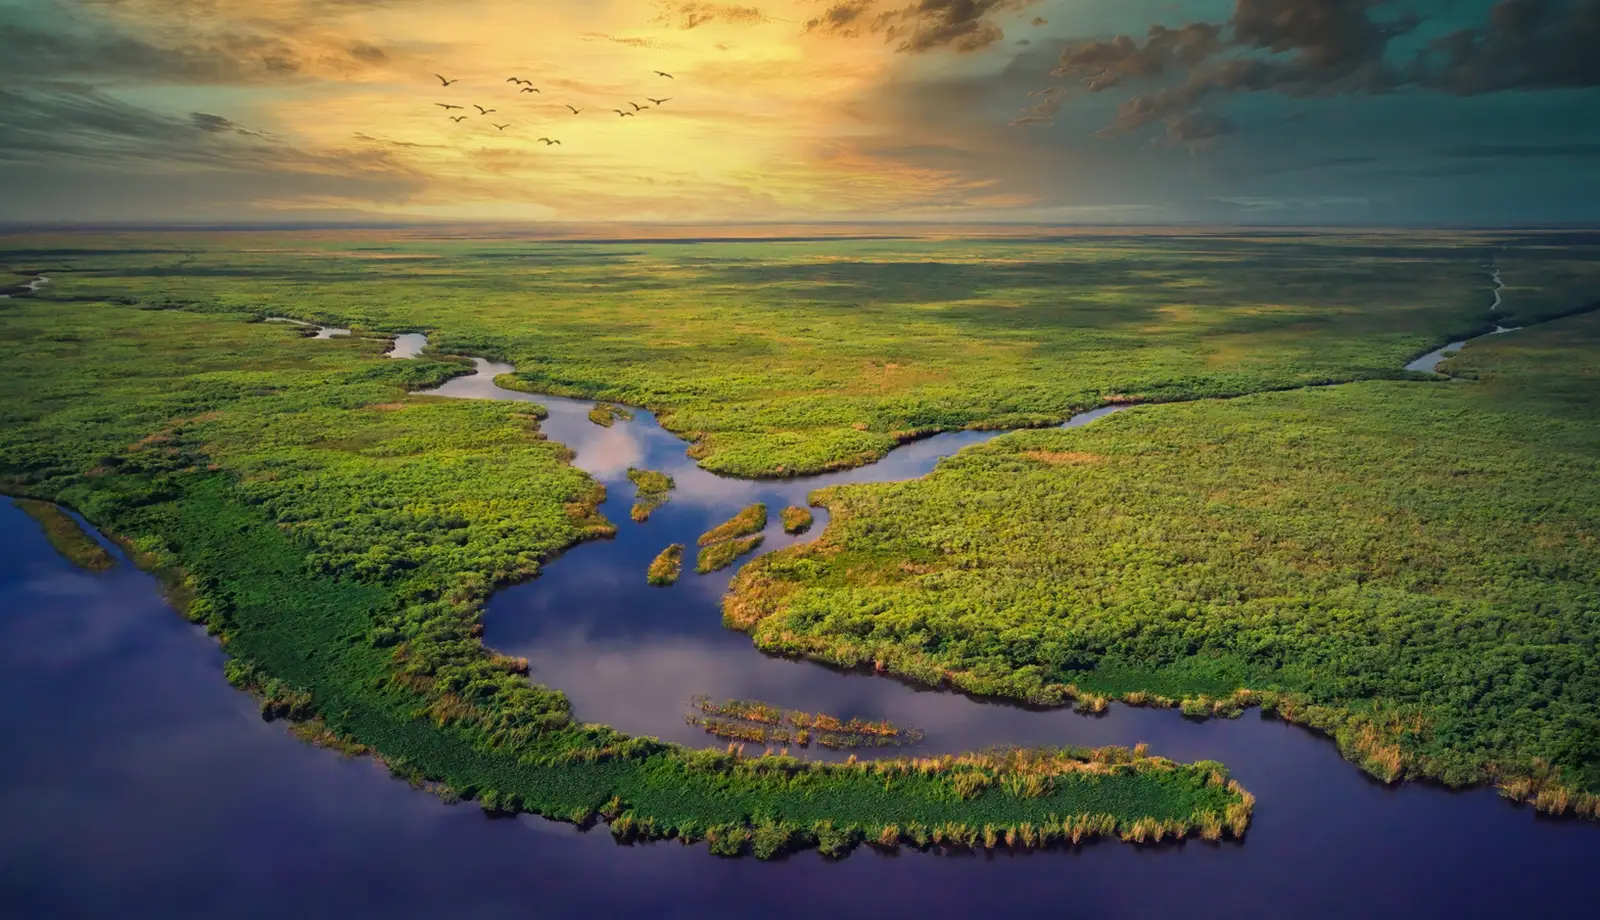 Vườn quốc gia Everglades - Hành trình khám phá vùng đất hoang dã